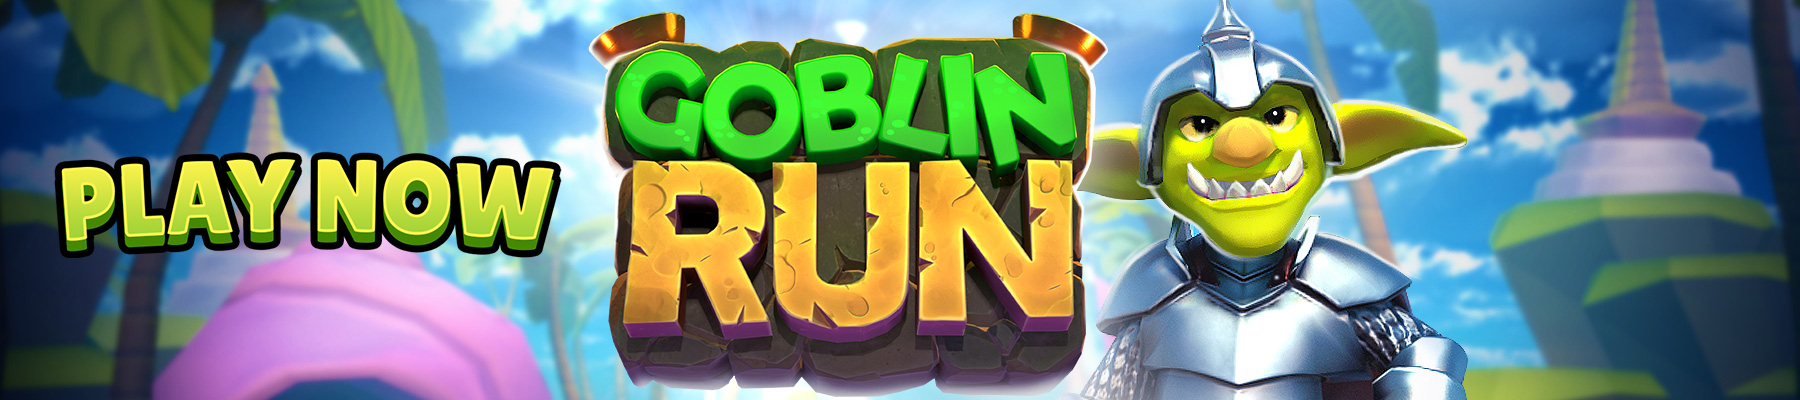 立即播放Goblin Run